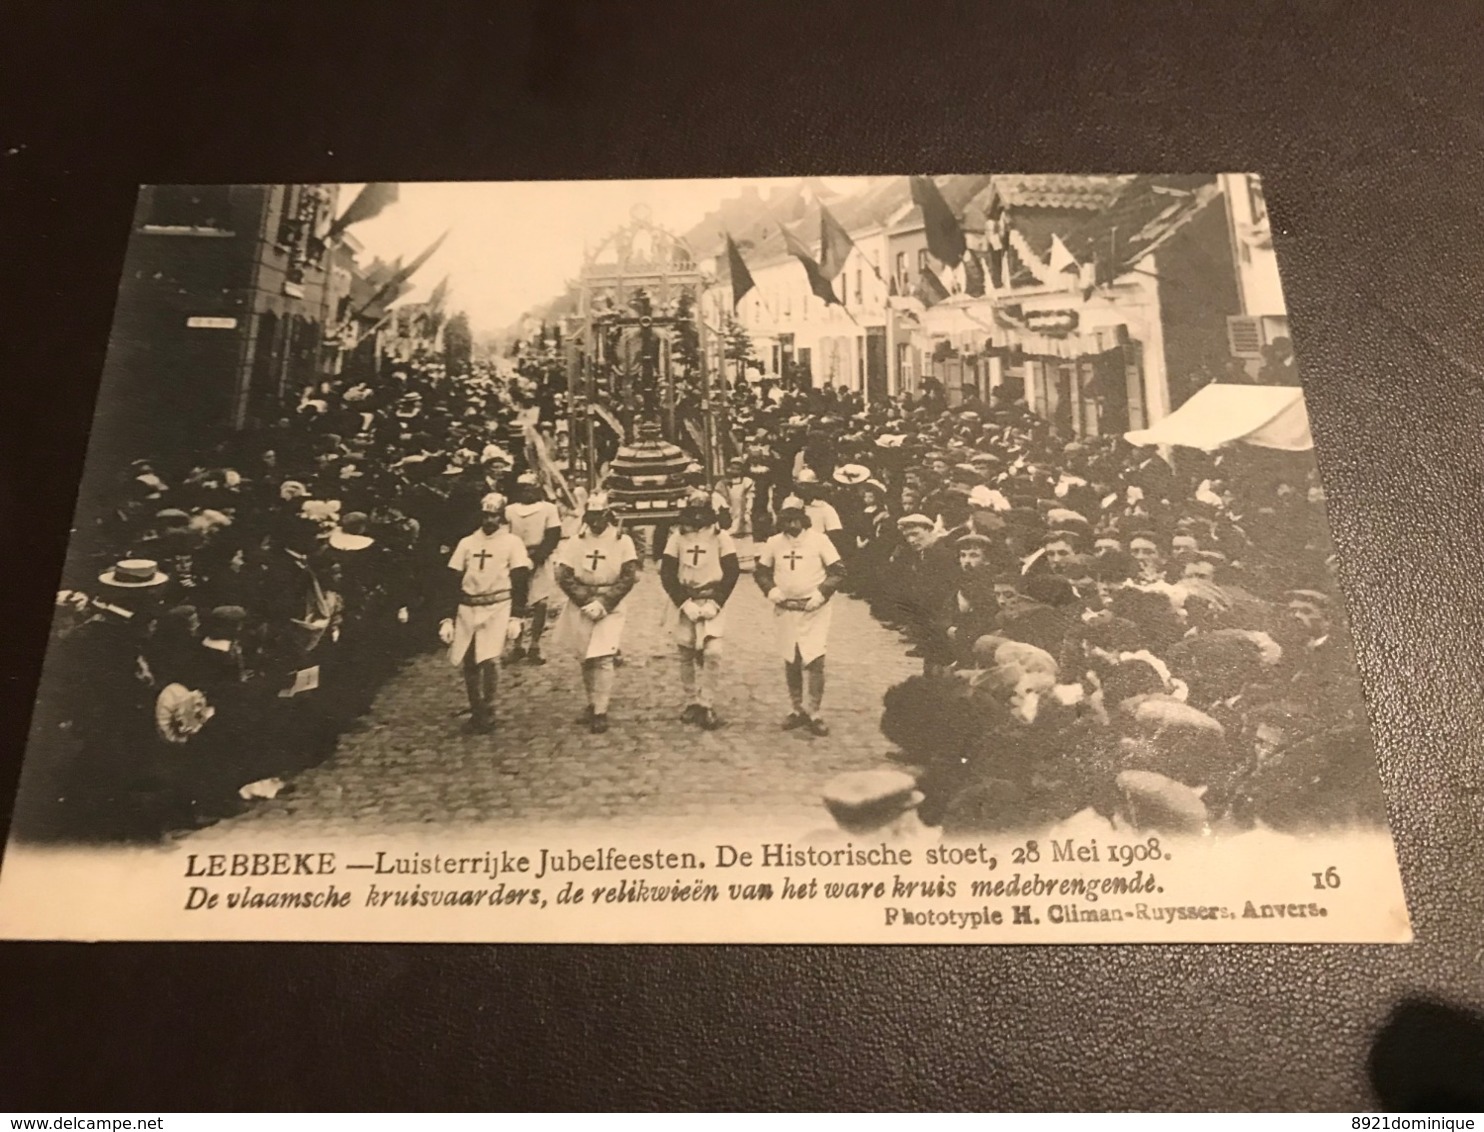 Lebbeke - Luisterrijke Jubelfeesten Stoet 28 Mei 1908 - Photo Climan-Ruyssers - Vlaamsche Kruisvaarders - Lebbeke